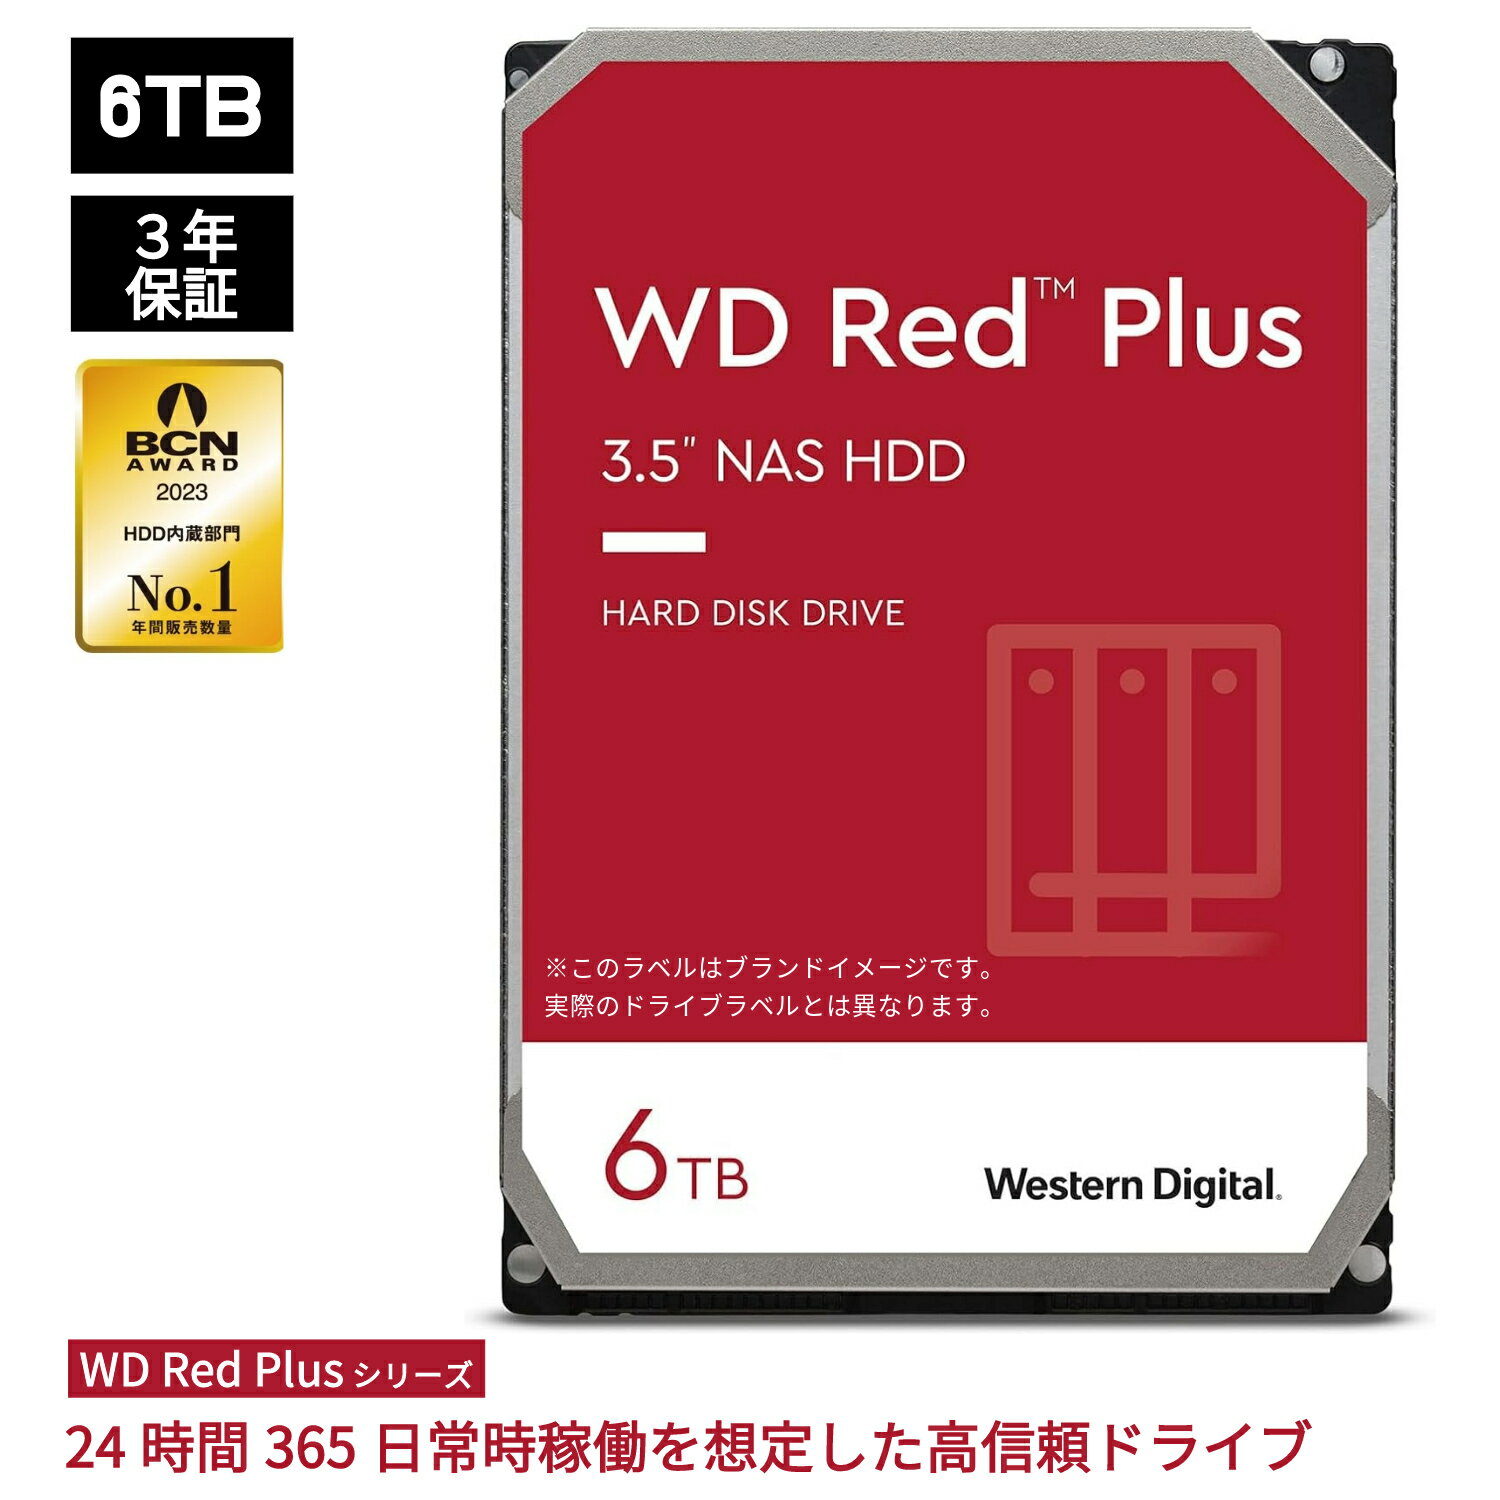 【P5倍6/4 20:00~6/11 1:59】 Western Digital ウエスタンデジタル WD Red Plus 内蔵 HDD ハードディスク 6TB CMR 3.5インチ SATA 5400rpm キャッシュ256MB NAS メーカー保証3年 WD60EFPX 内蔵hdd バックアップ 用 パソコン ハードディスクドライブ ec 大容量